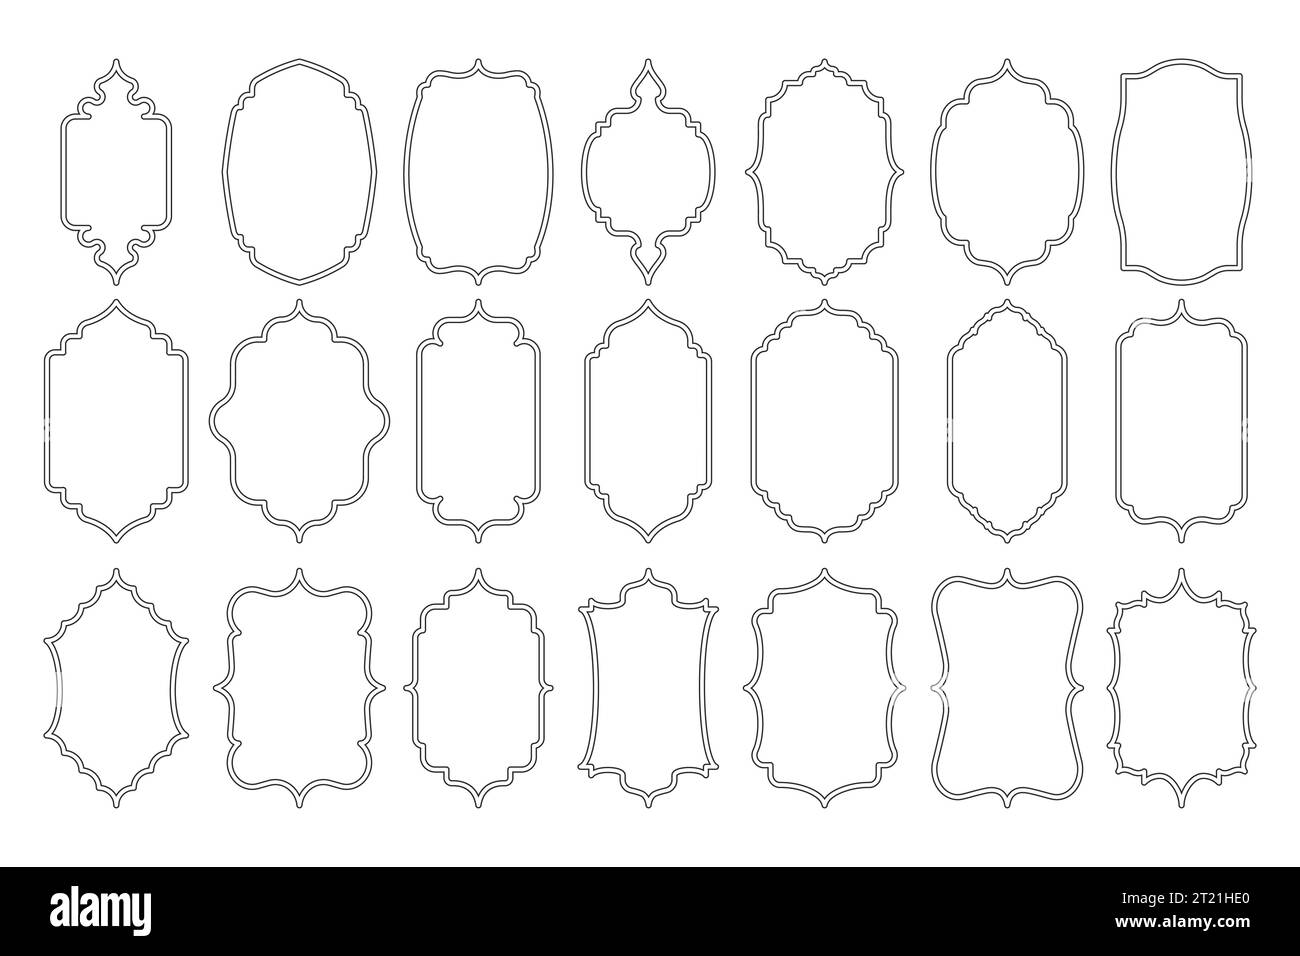 Forme di linea islamiche. Bordi geometrici arabi astratti, silhouette arabesche islamiche ed elementi decorativi semplici. Raccolta vettoriale isolata Illustrazione Vettoriale